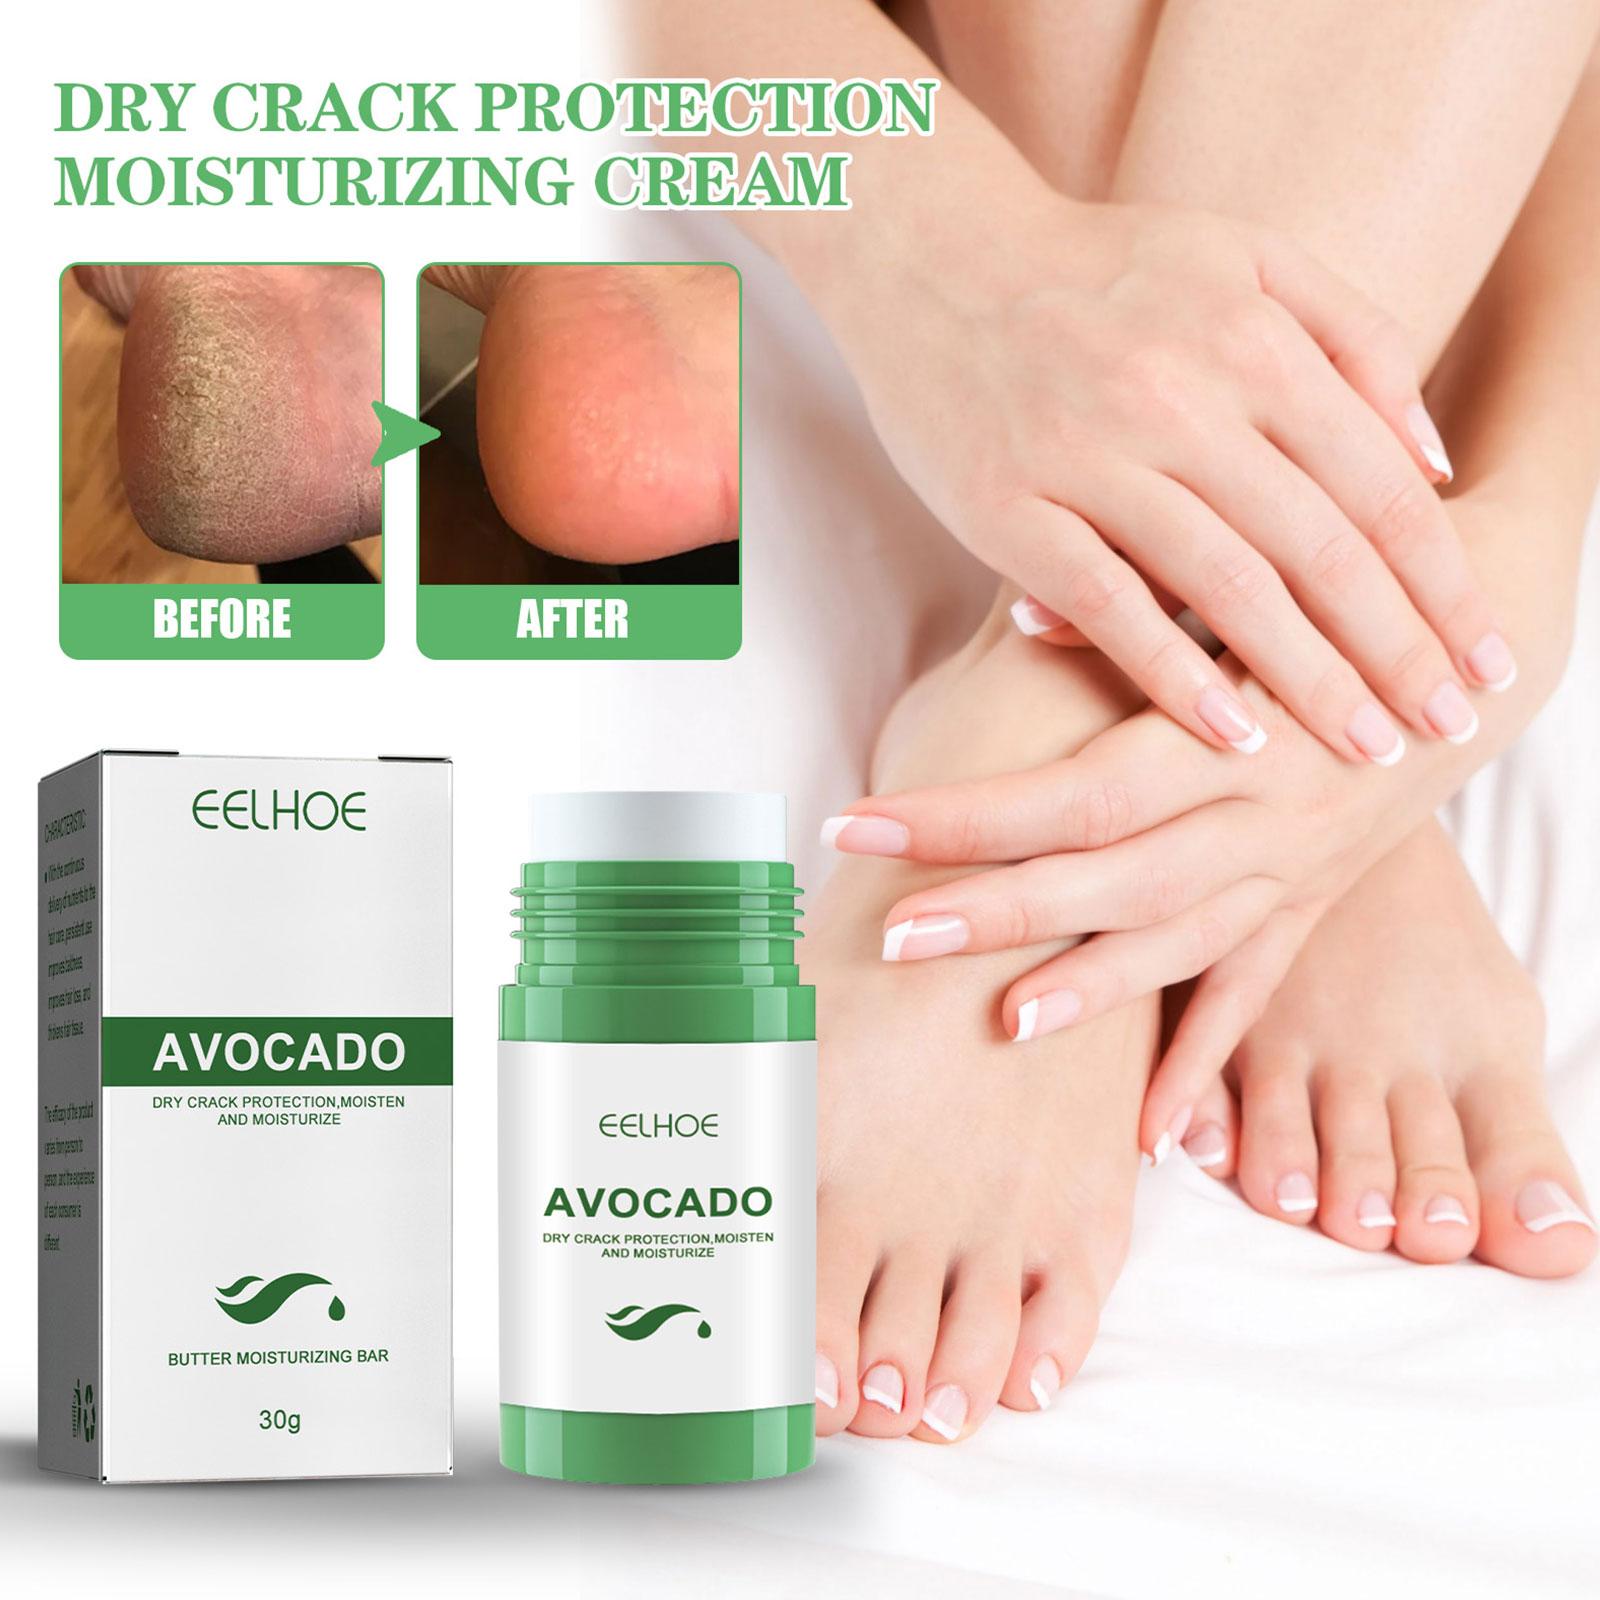 Crema naturale del piede olio di avocado che idrata il tallone antidry crack rimozione di riparazione rotta rimozione morta le mani